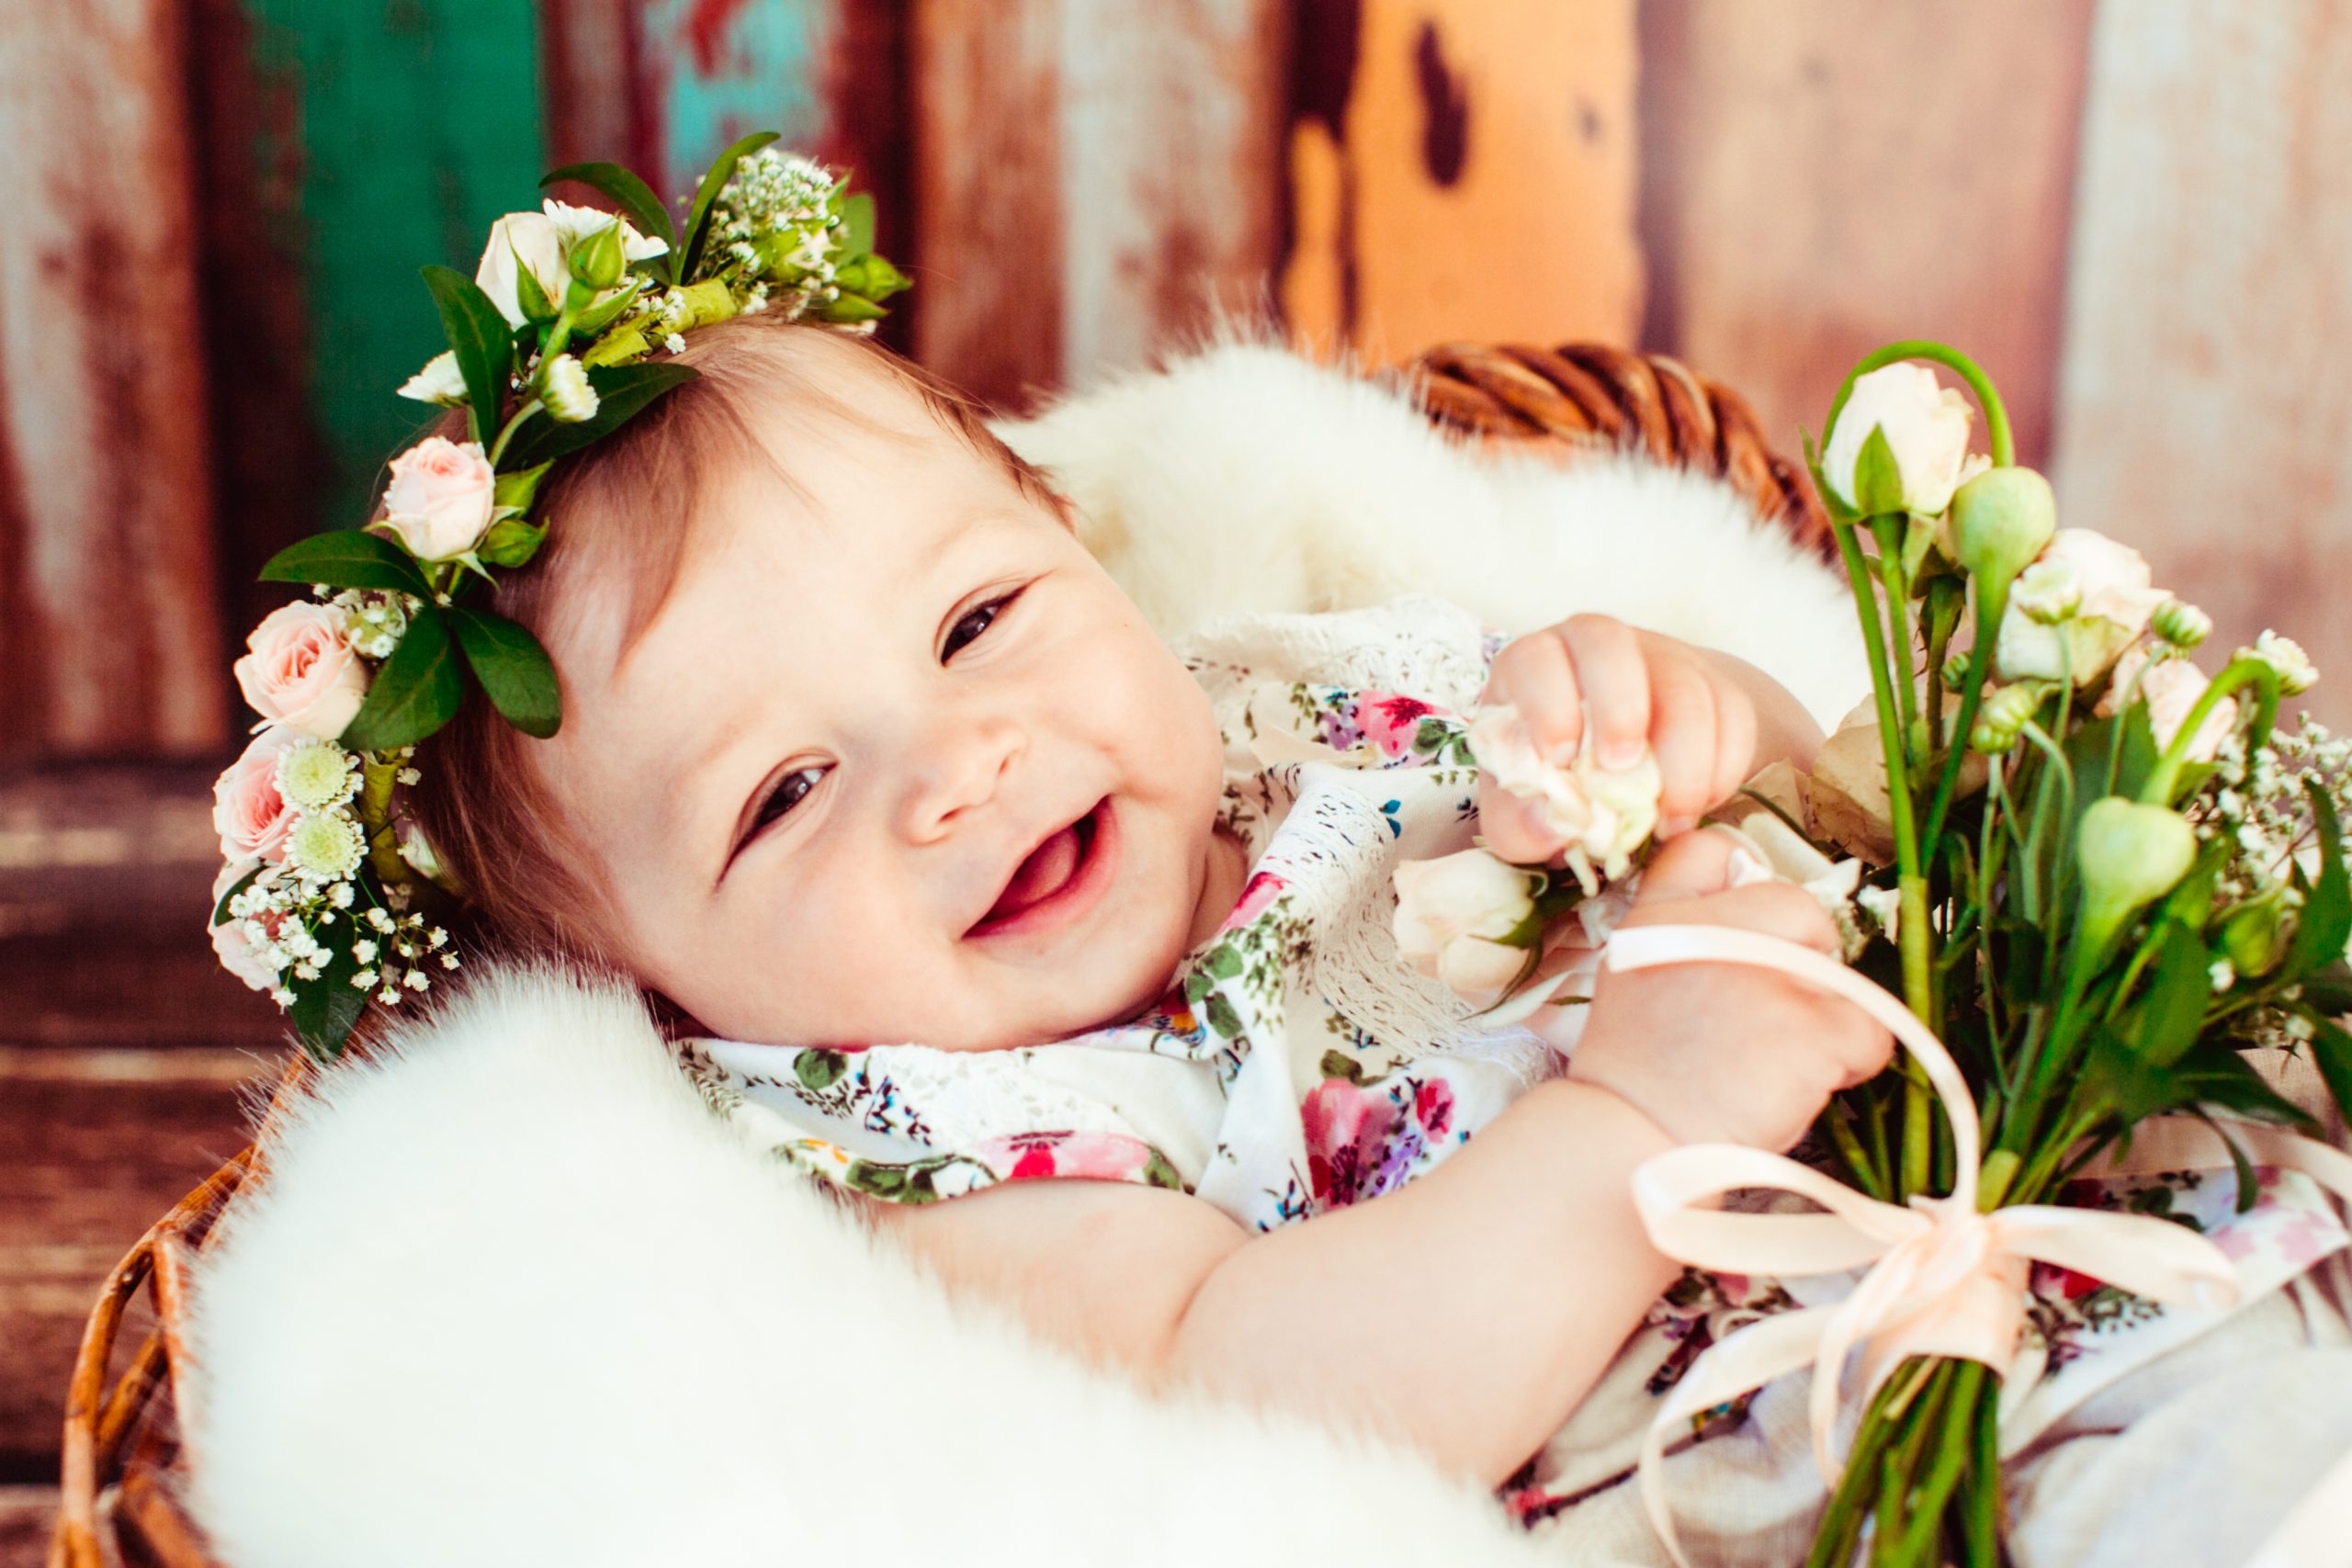 Some Amazing Baby Photoshoot Ideas